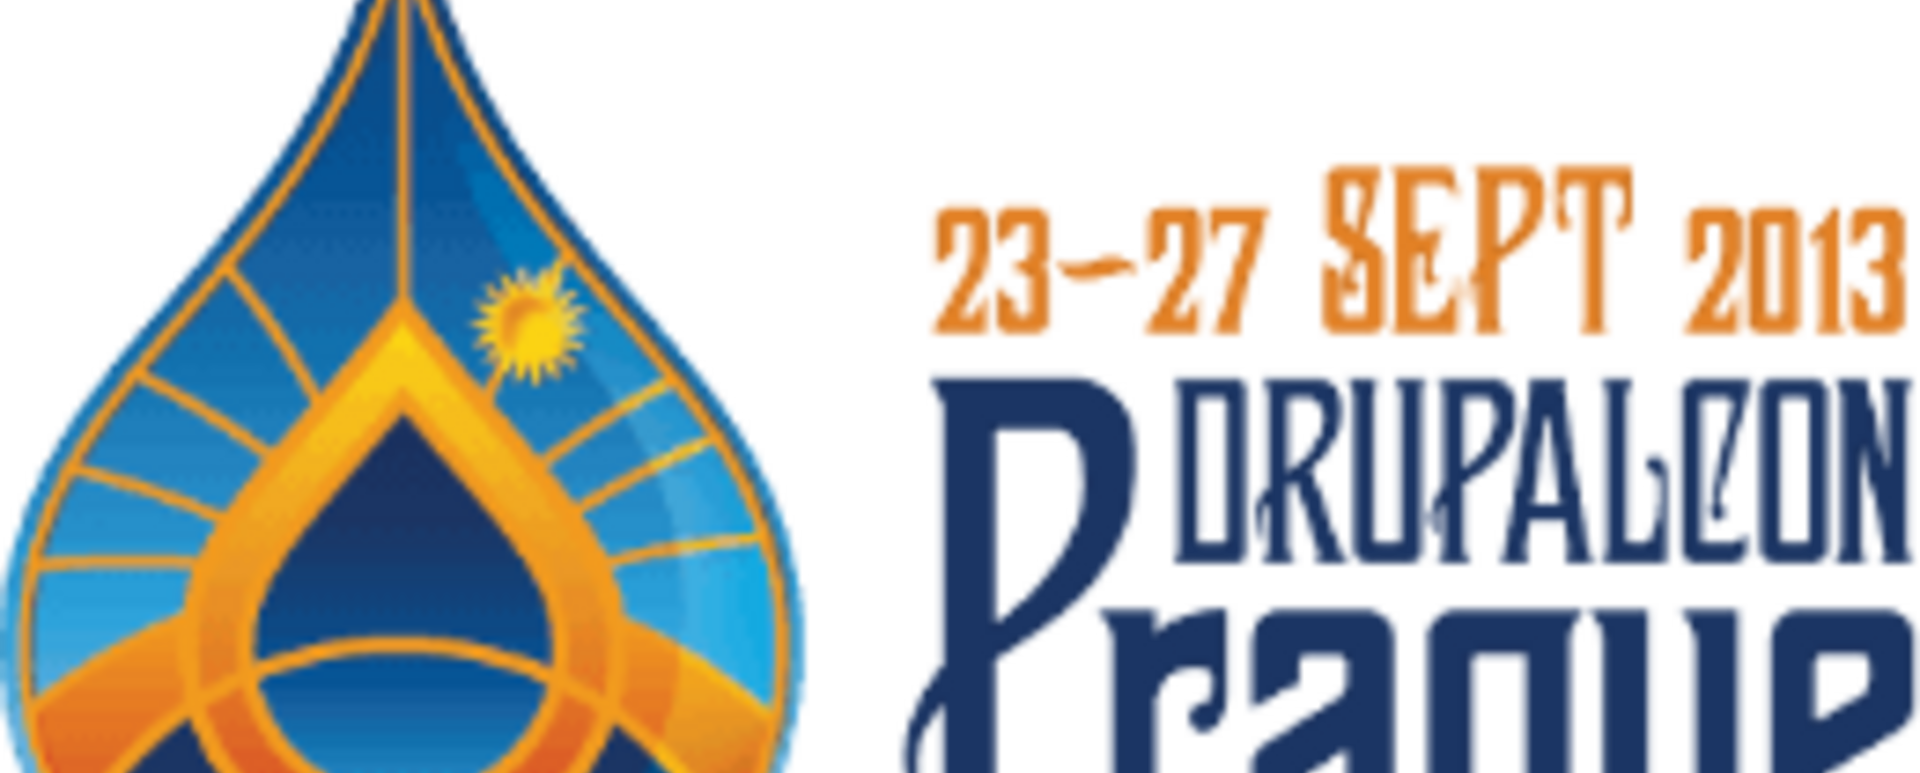 23.09.2013 rozpoczyna się konferencja DrupalCon w Pradze. Będziemy tam!